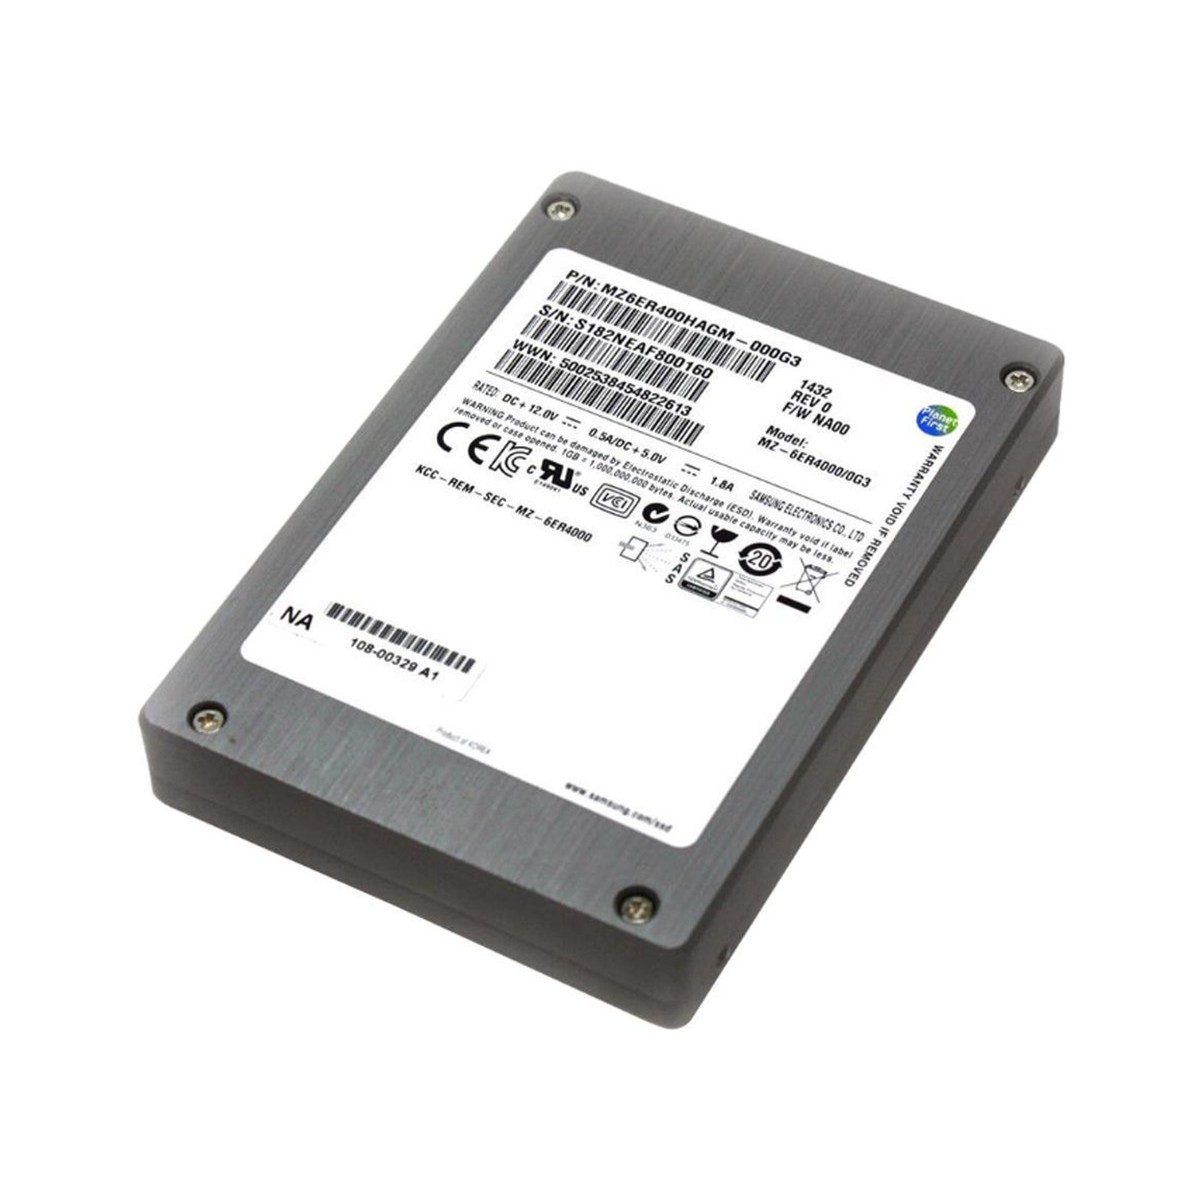 DYSK SAMSUNG SSD SAS 6G 2,5 MZ6ER400HAGM-000G3